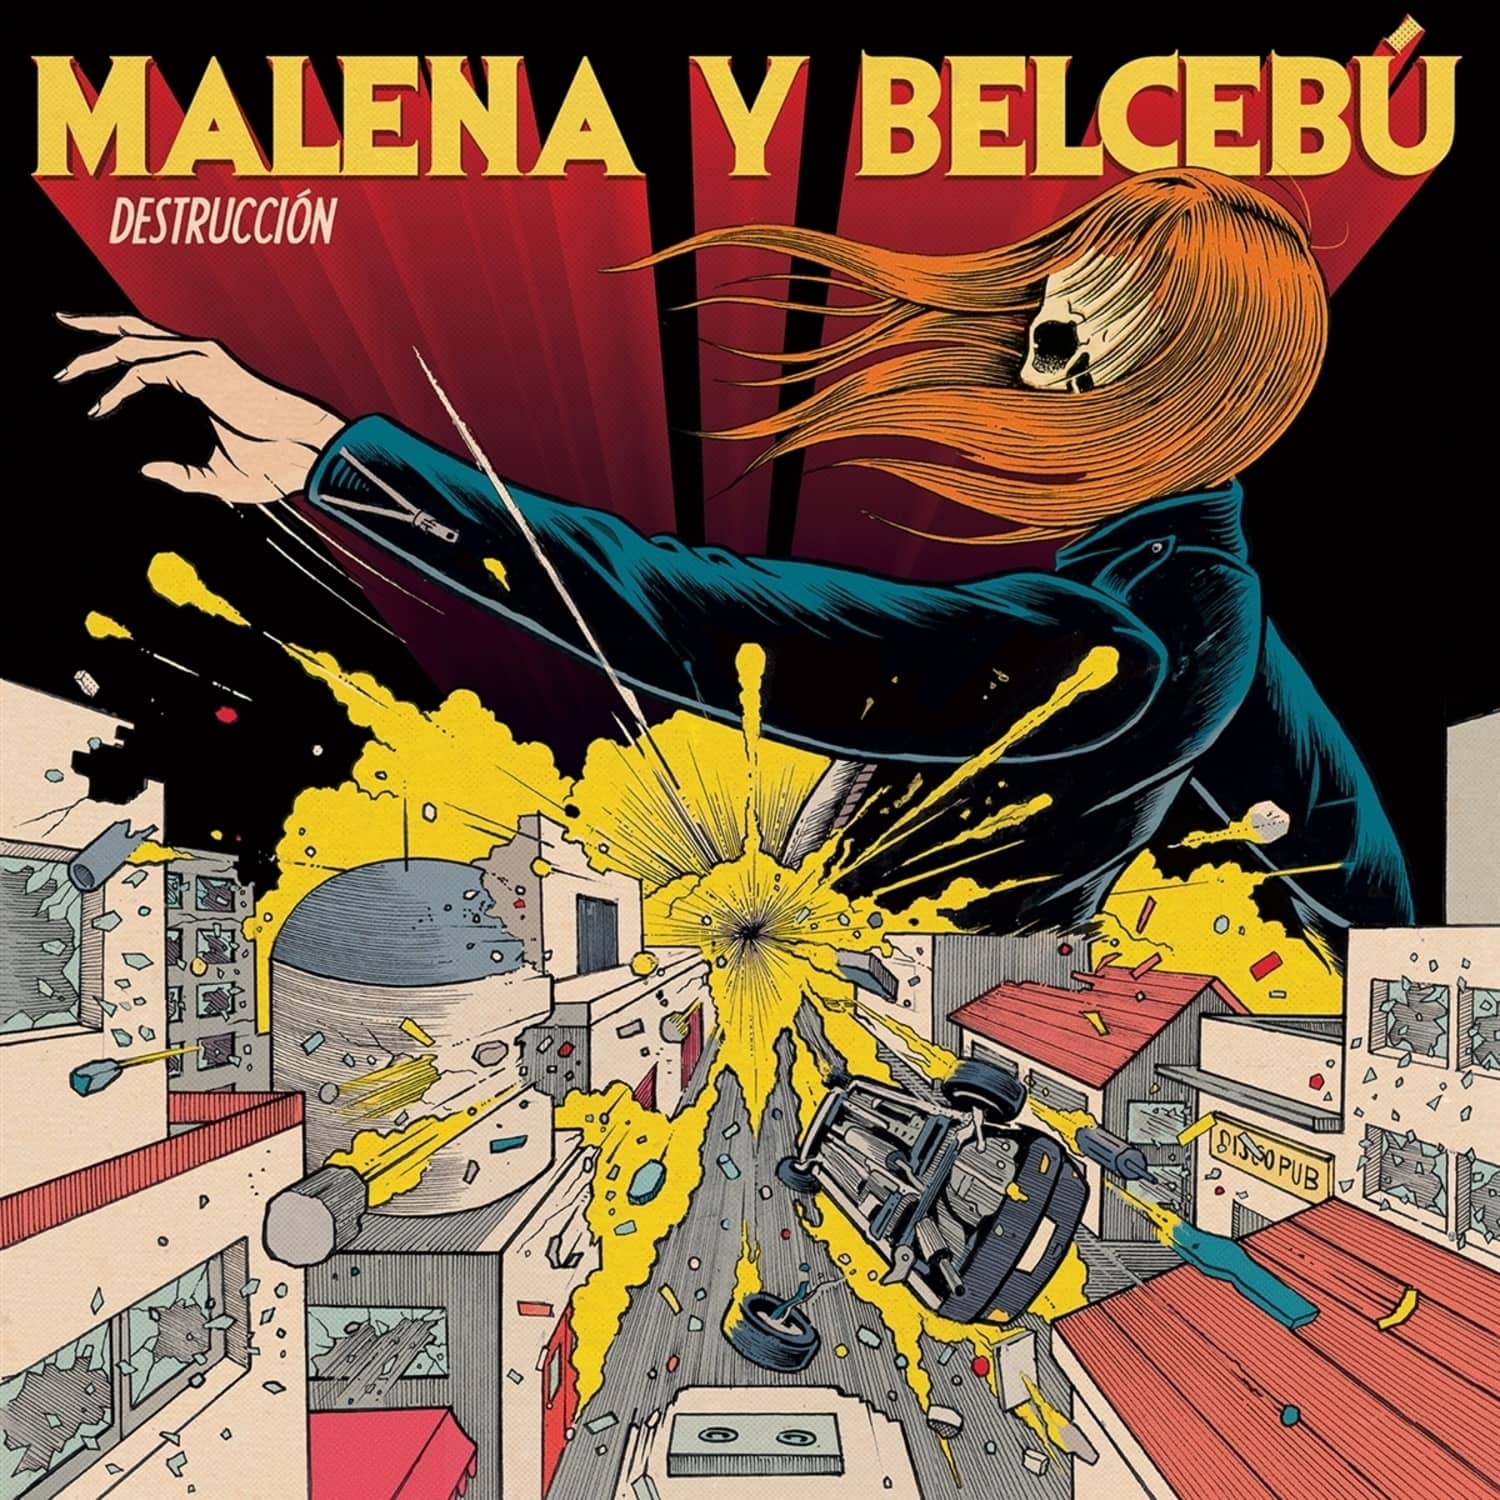 Malena Y Belcebu - DESTRUCCION 